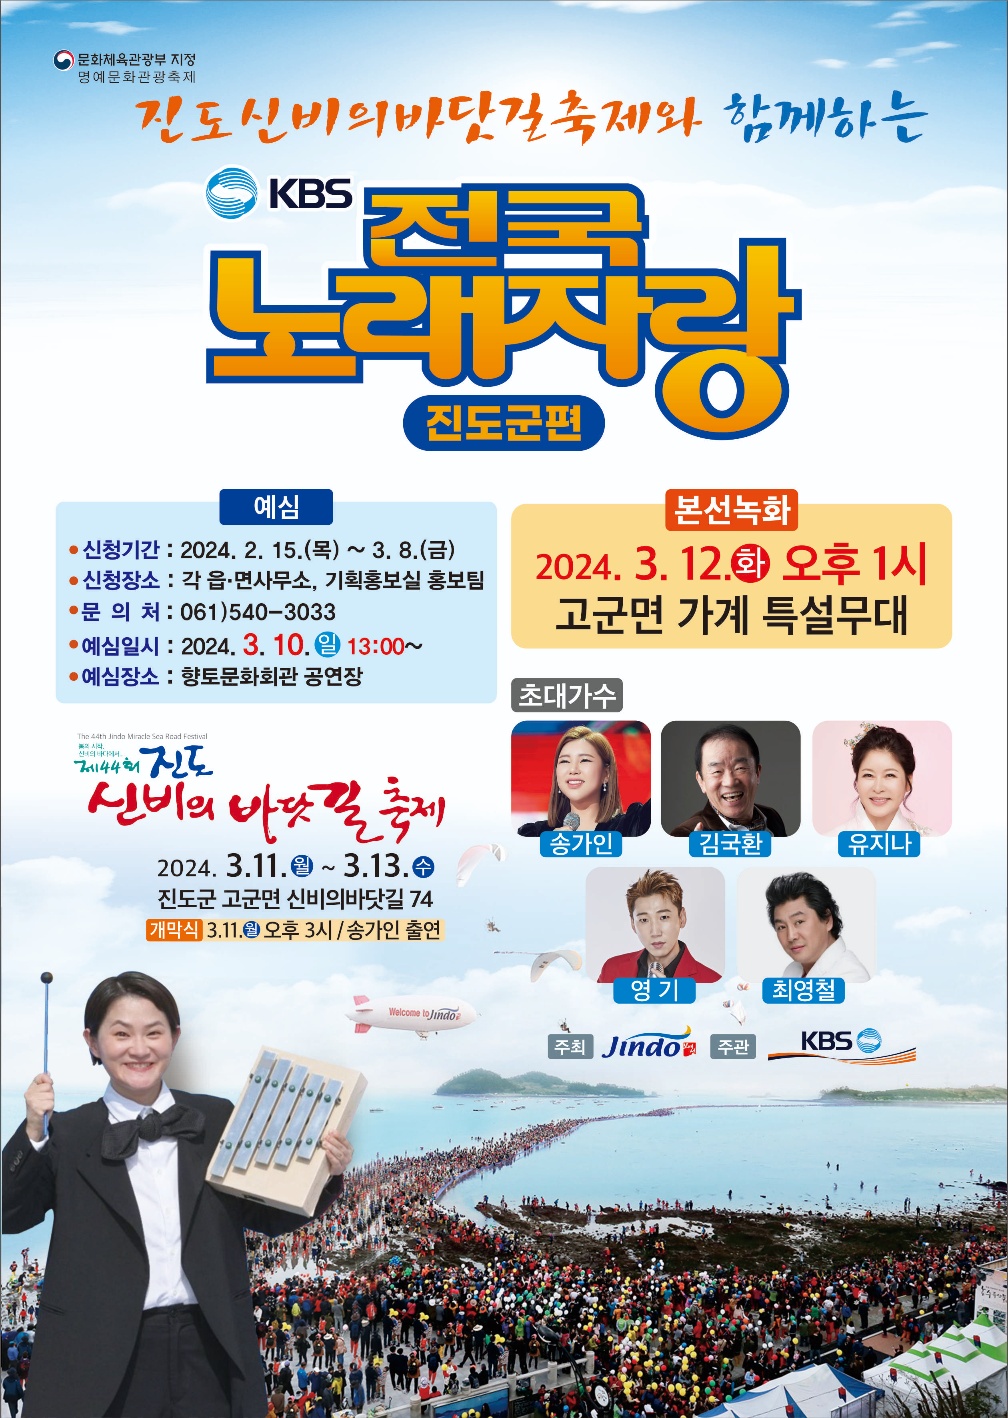 진도 신비의 바닷길 축제와 함께하는 KBS 전국노래자랑 개최 첨부#1